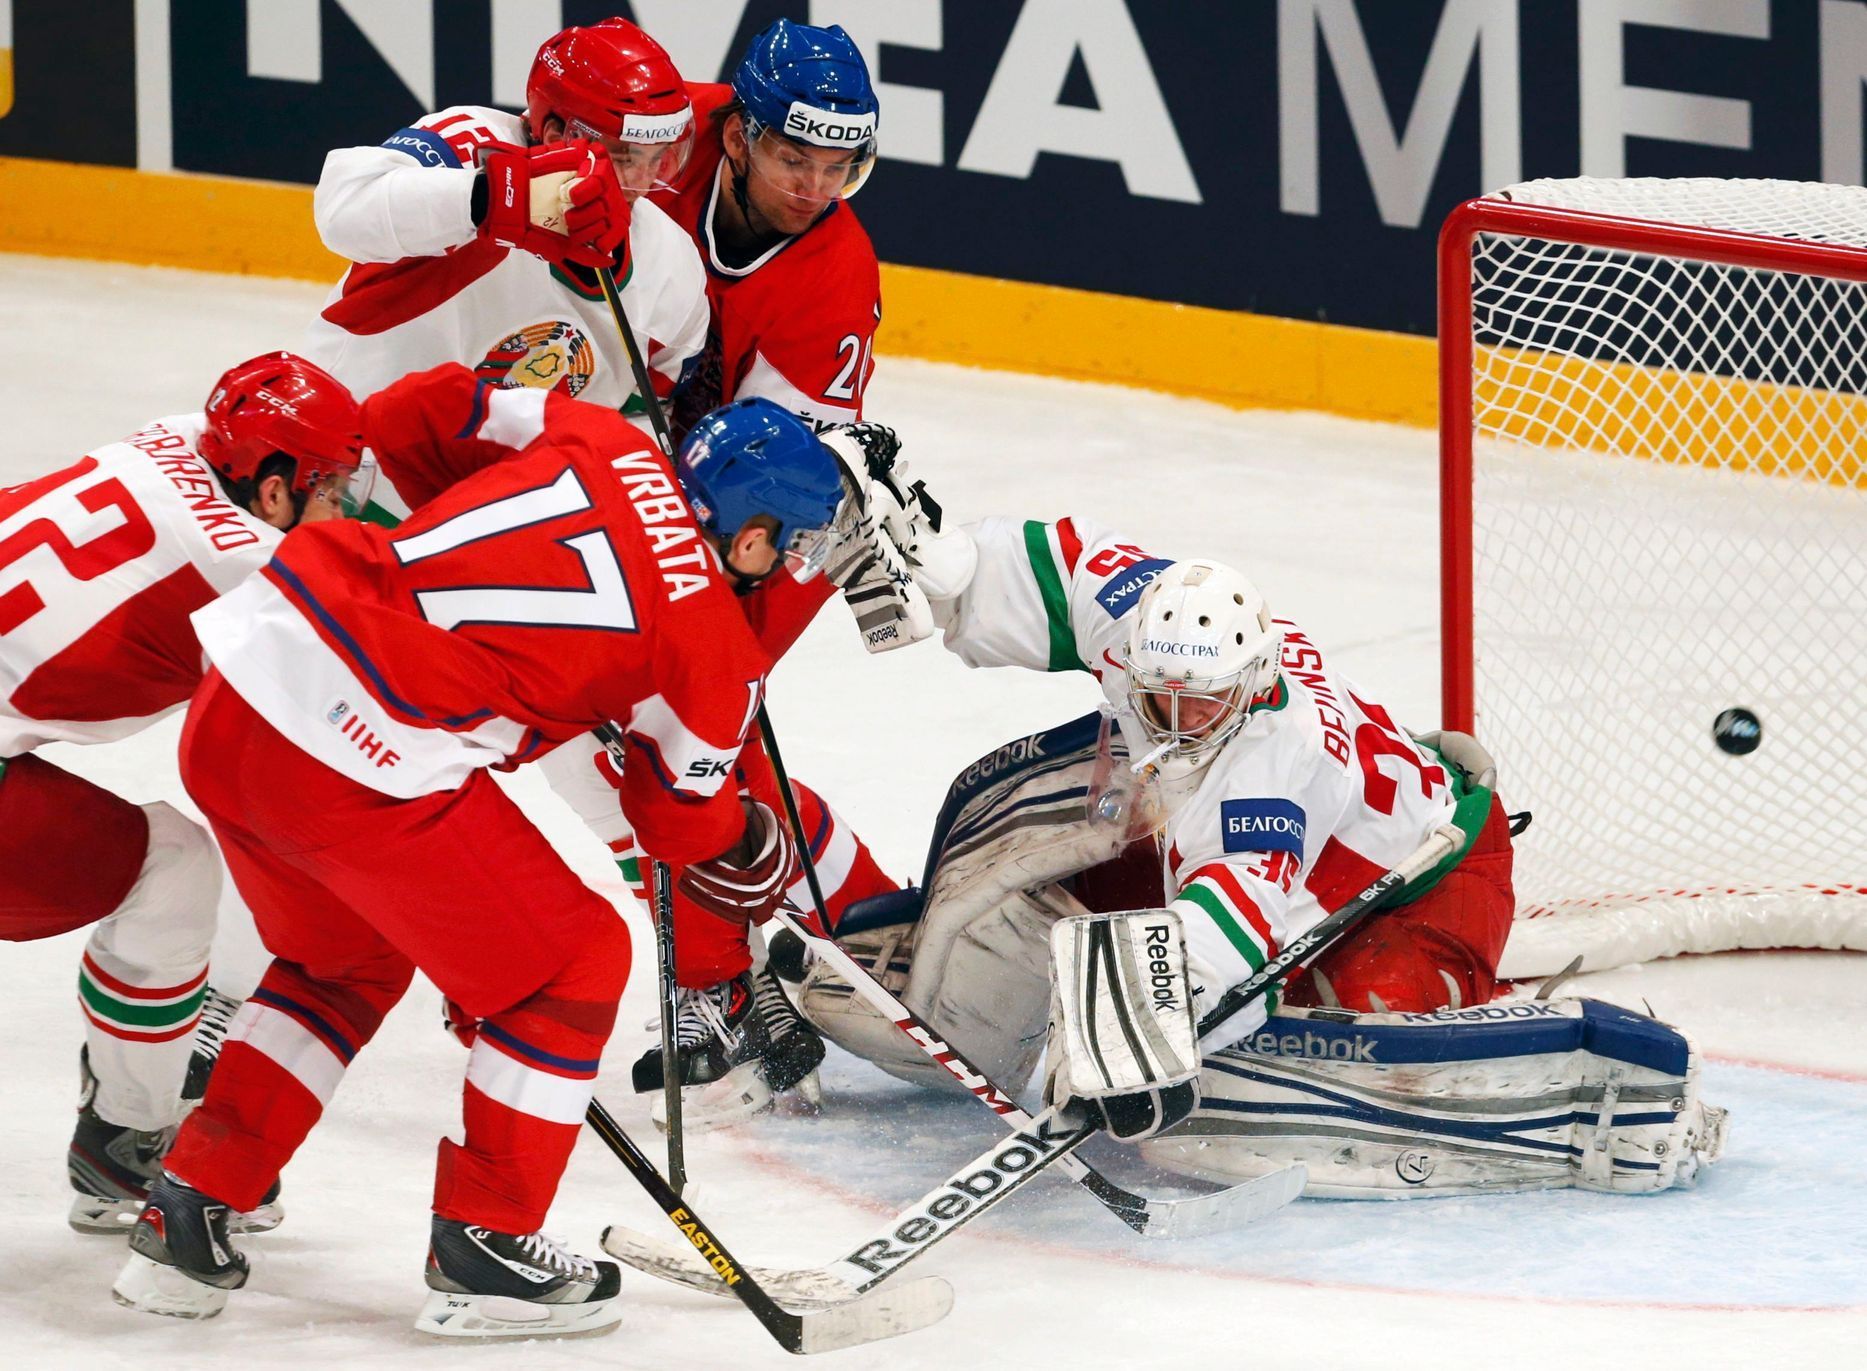 MS v hokeji 2013, Česko - Bělorusko: Radim Vrbata - Vitali Belinskij; gól na 2:0